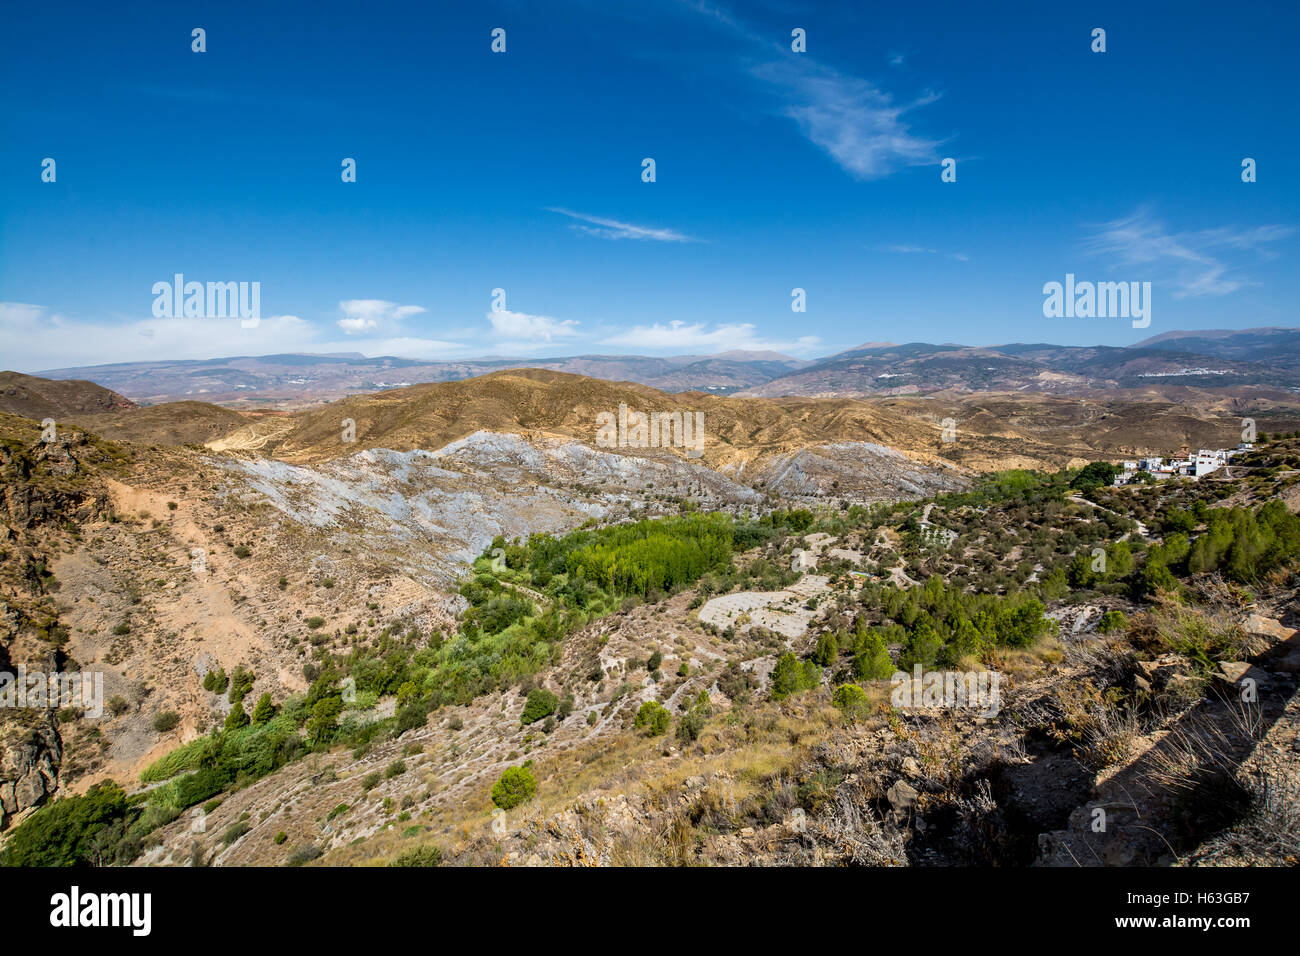 Beeindruckende Landschaft der Sierra Nevada, Region Alpujarra/Almeria, Spanien Stockfoto